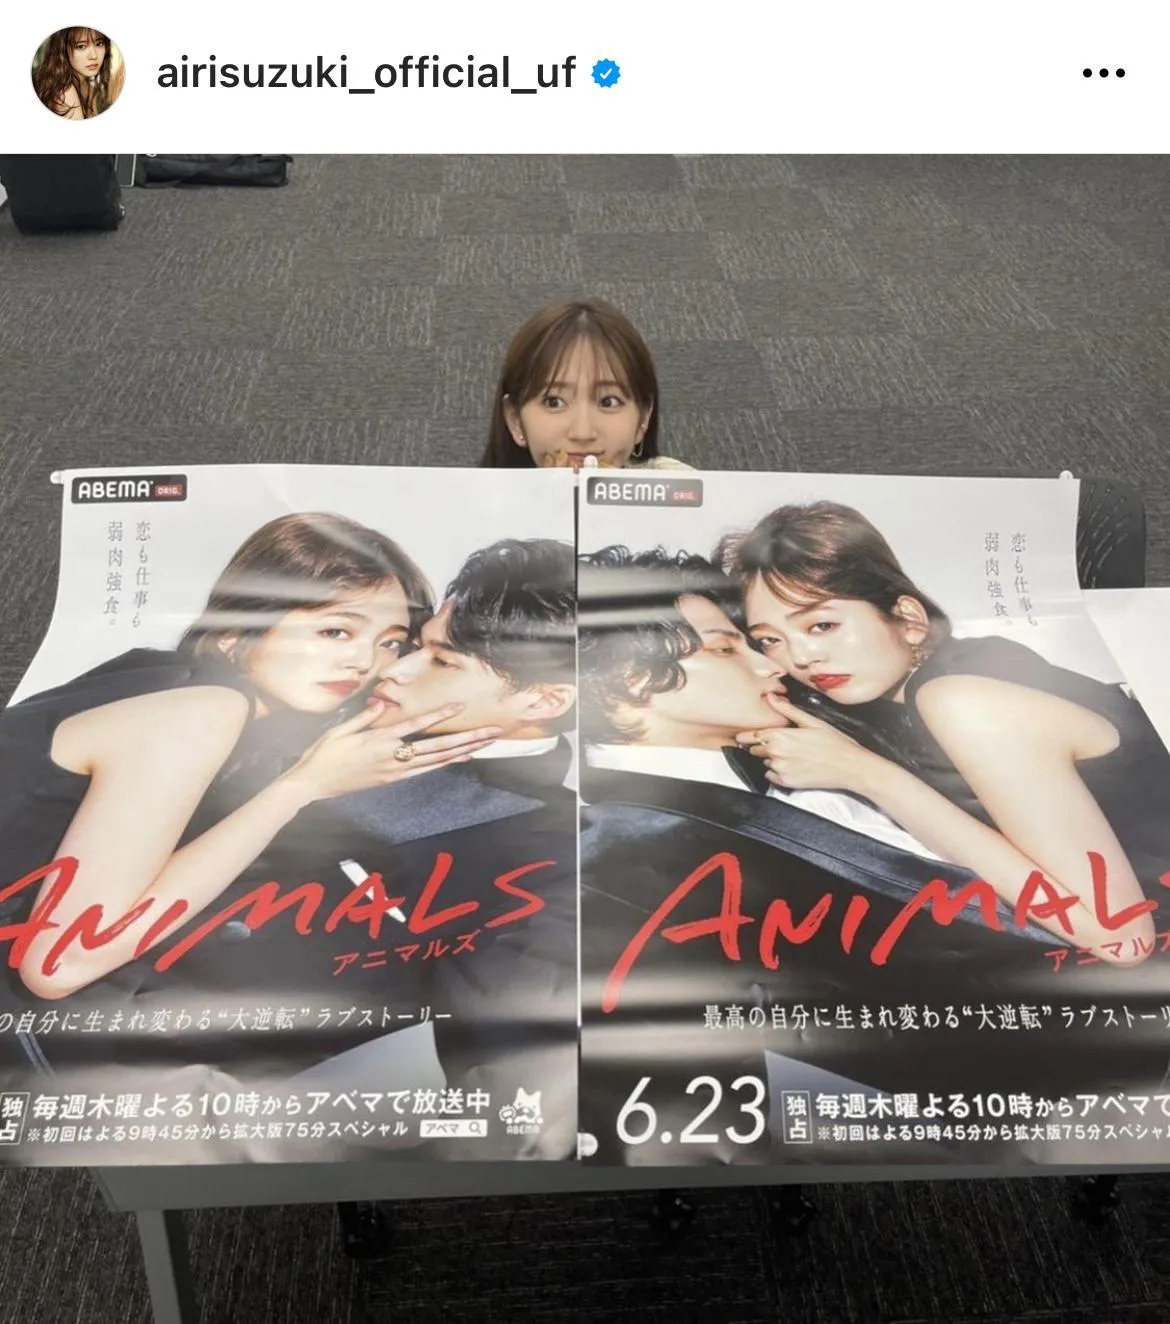  ※鈴木愛理公式Instagram(airisuzuki_official_uf)より